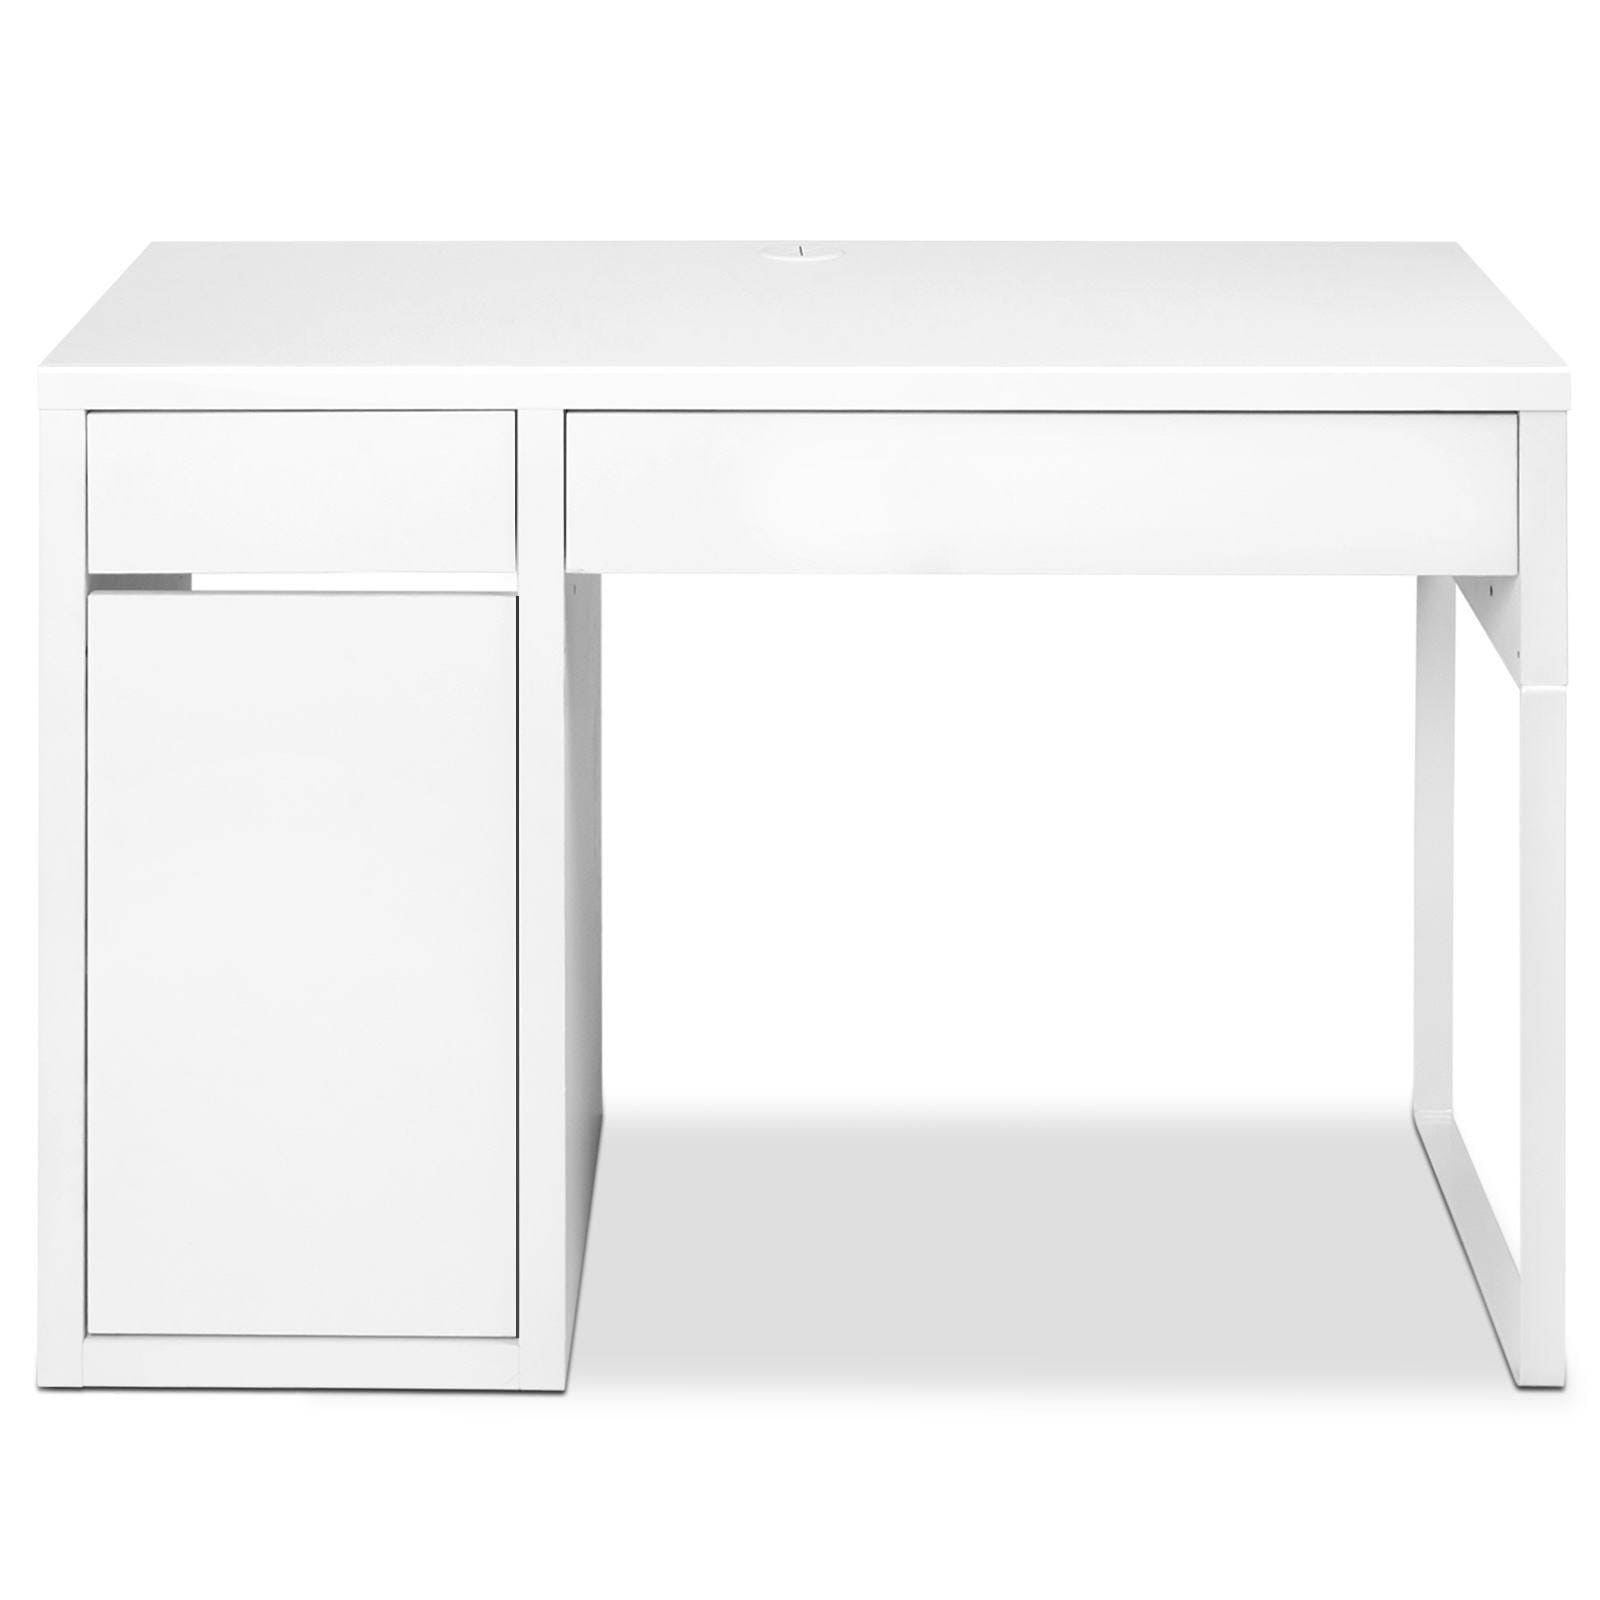 Artiss Metal Desk With Storage Cabinets - White - Newstart Furniture